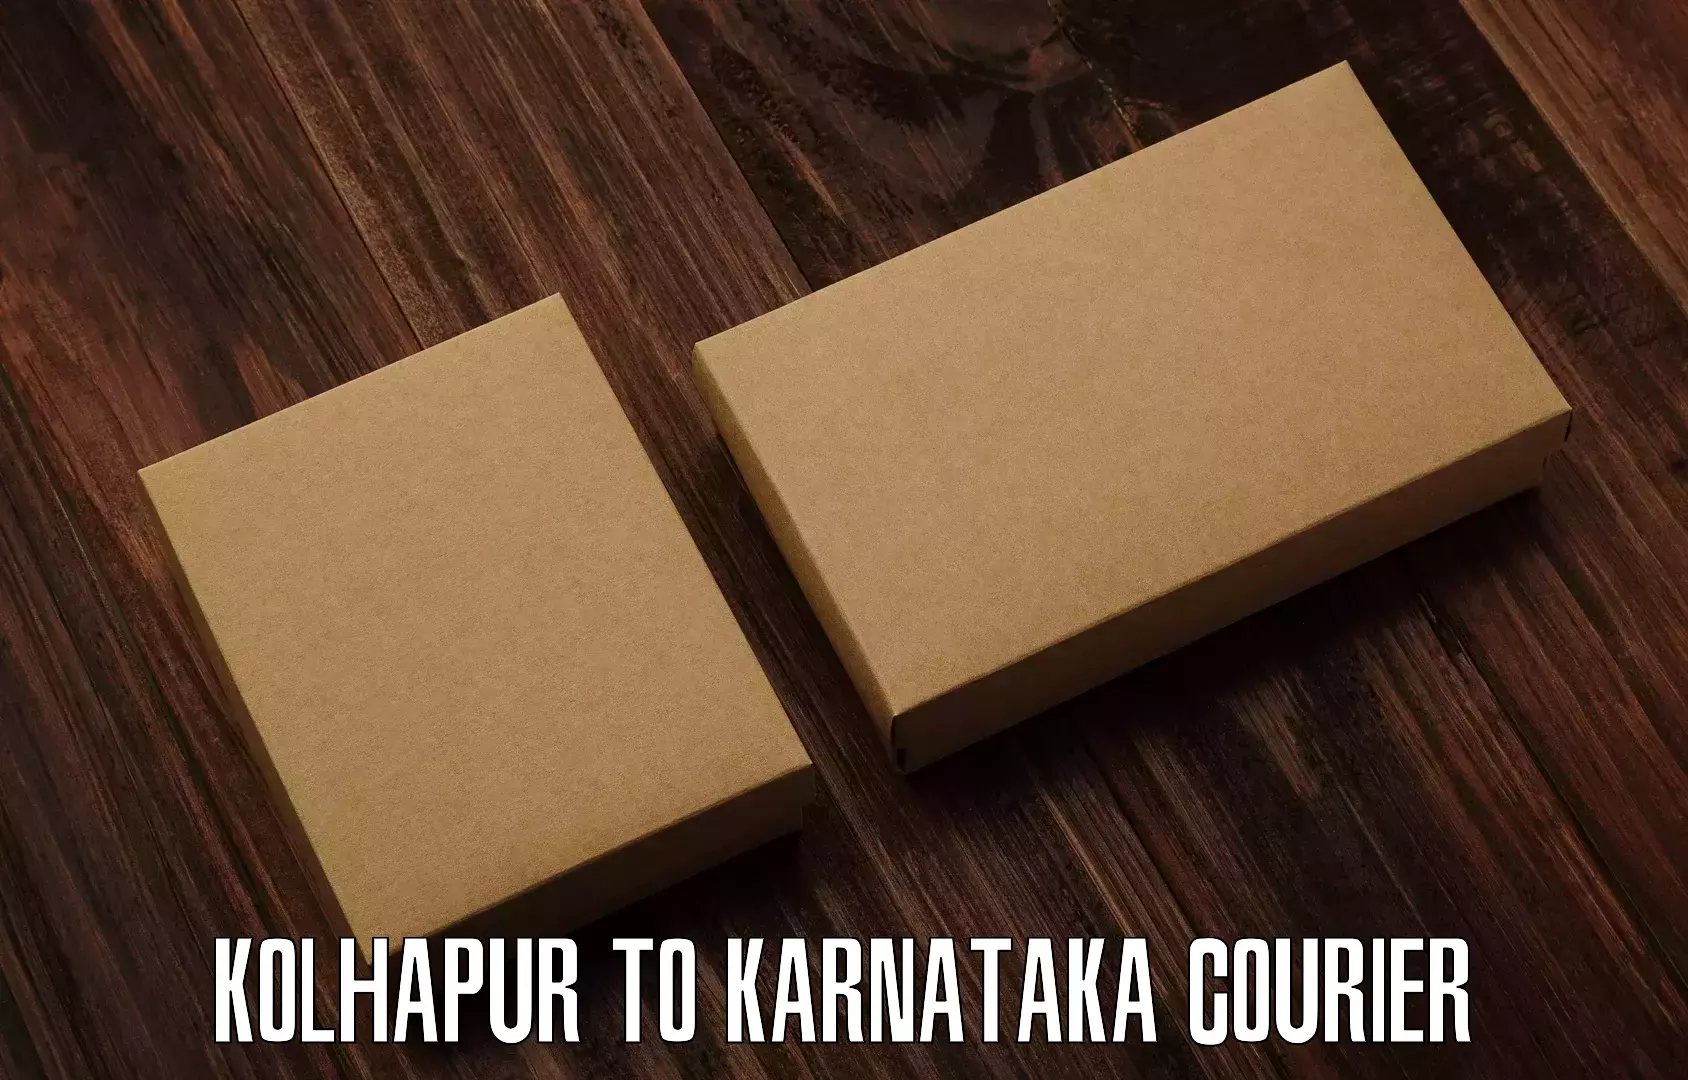 Same day shipping Kolhapur to Karnataka